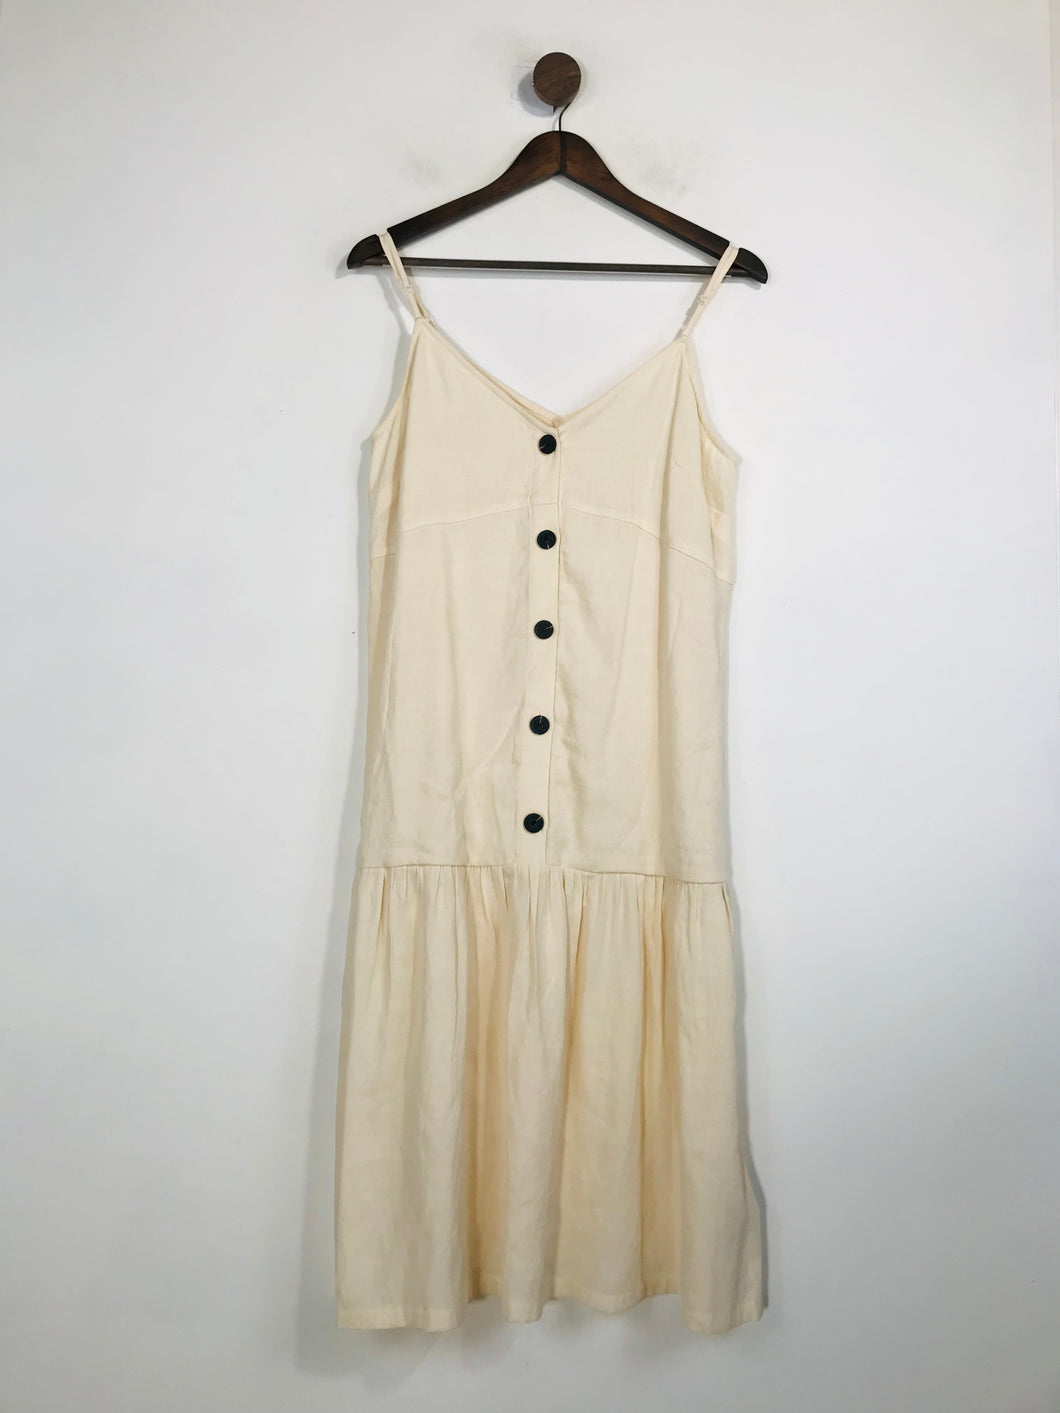 Pepa Loves Women's Summer Midi Dress | S UK8 | White